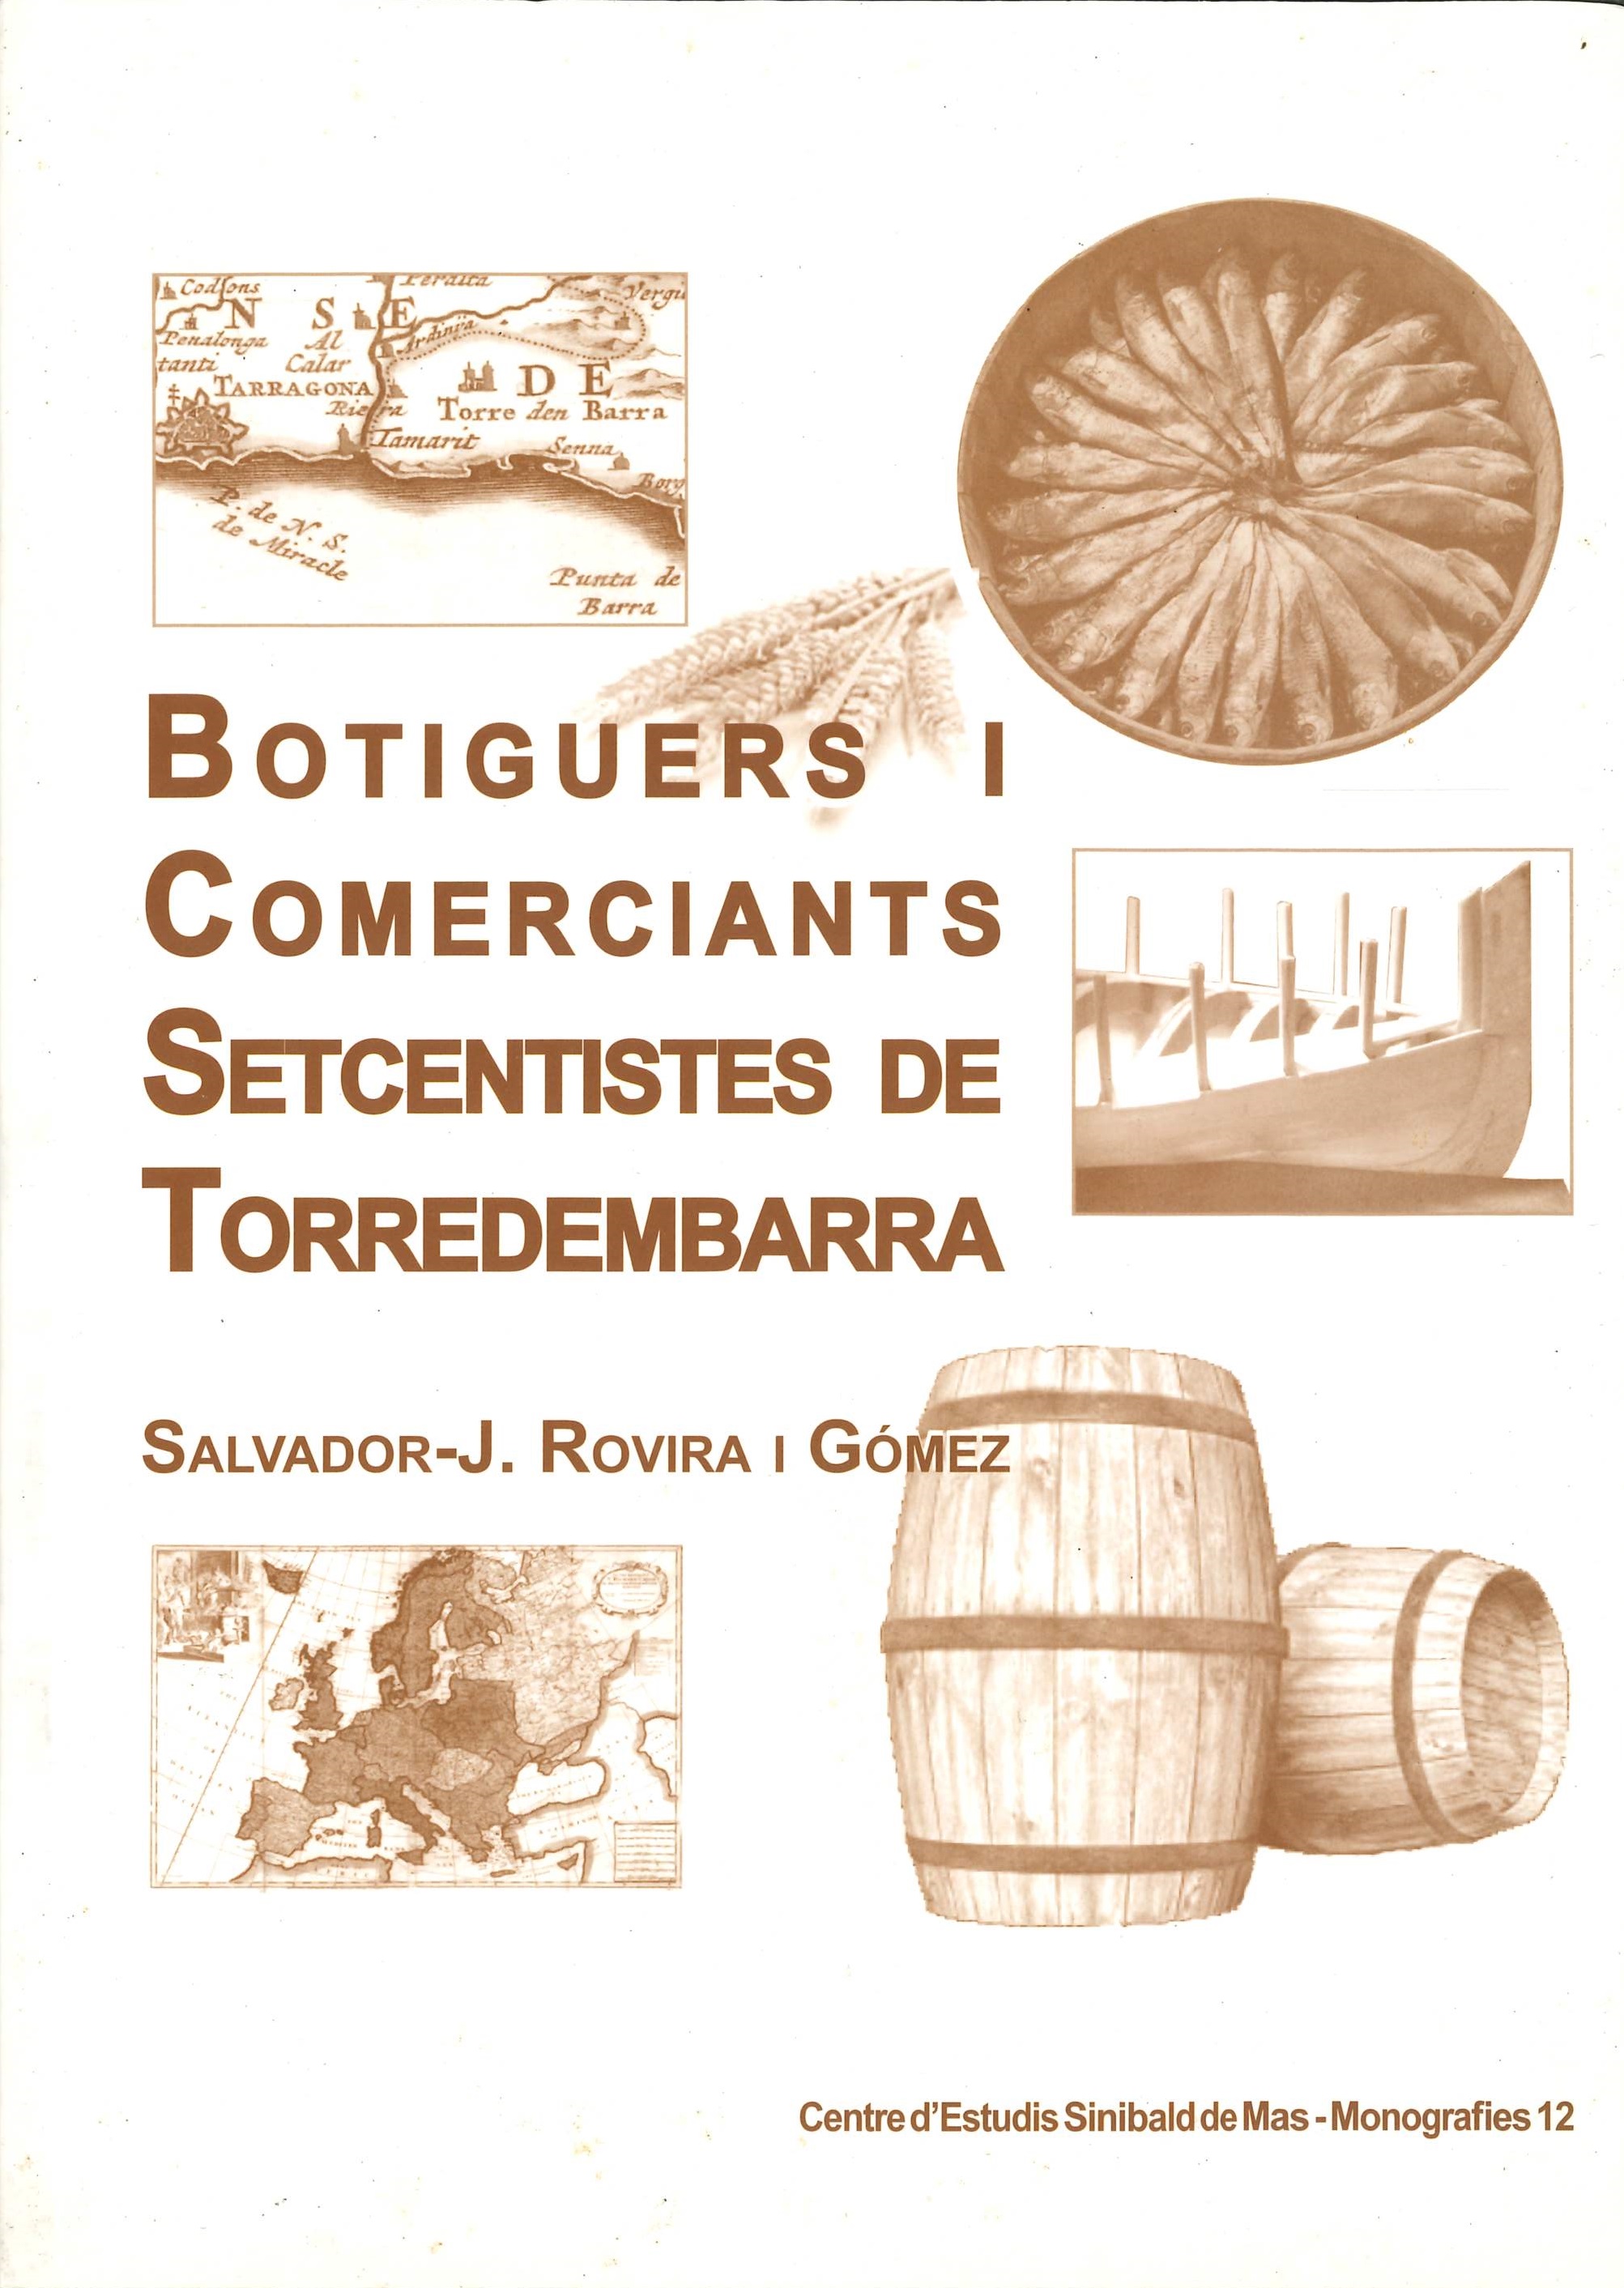 Imagen de portada del libro Botiguers i comerciants setcentistes de Torredembarra